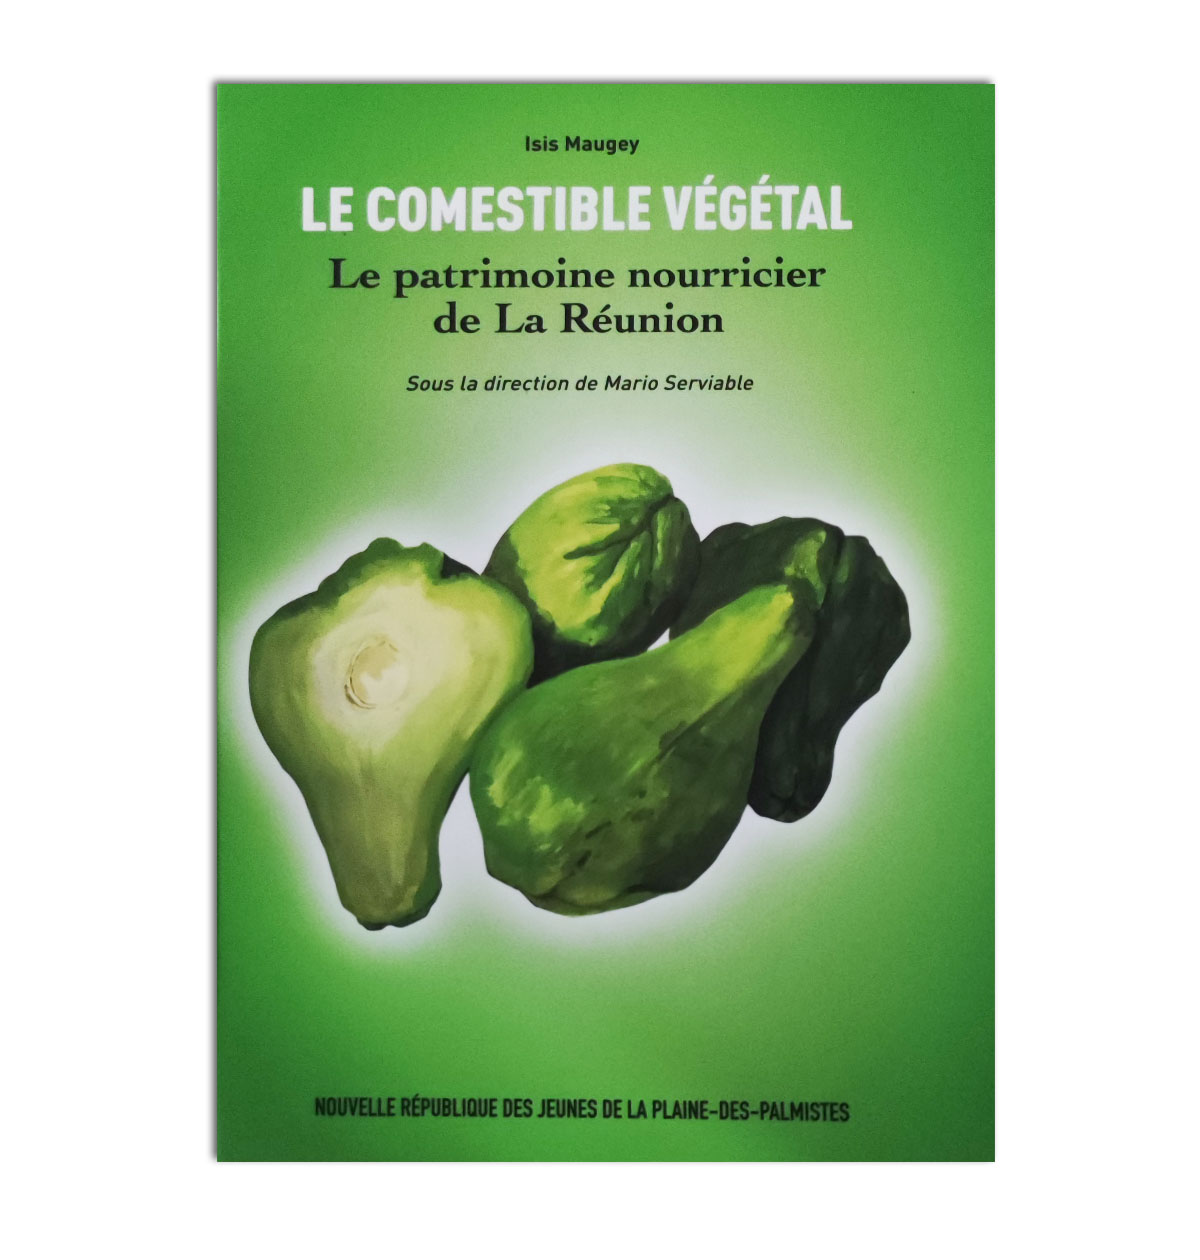 Le comestible végétal: Le patrimoine nourricier de la Réunion